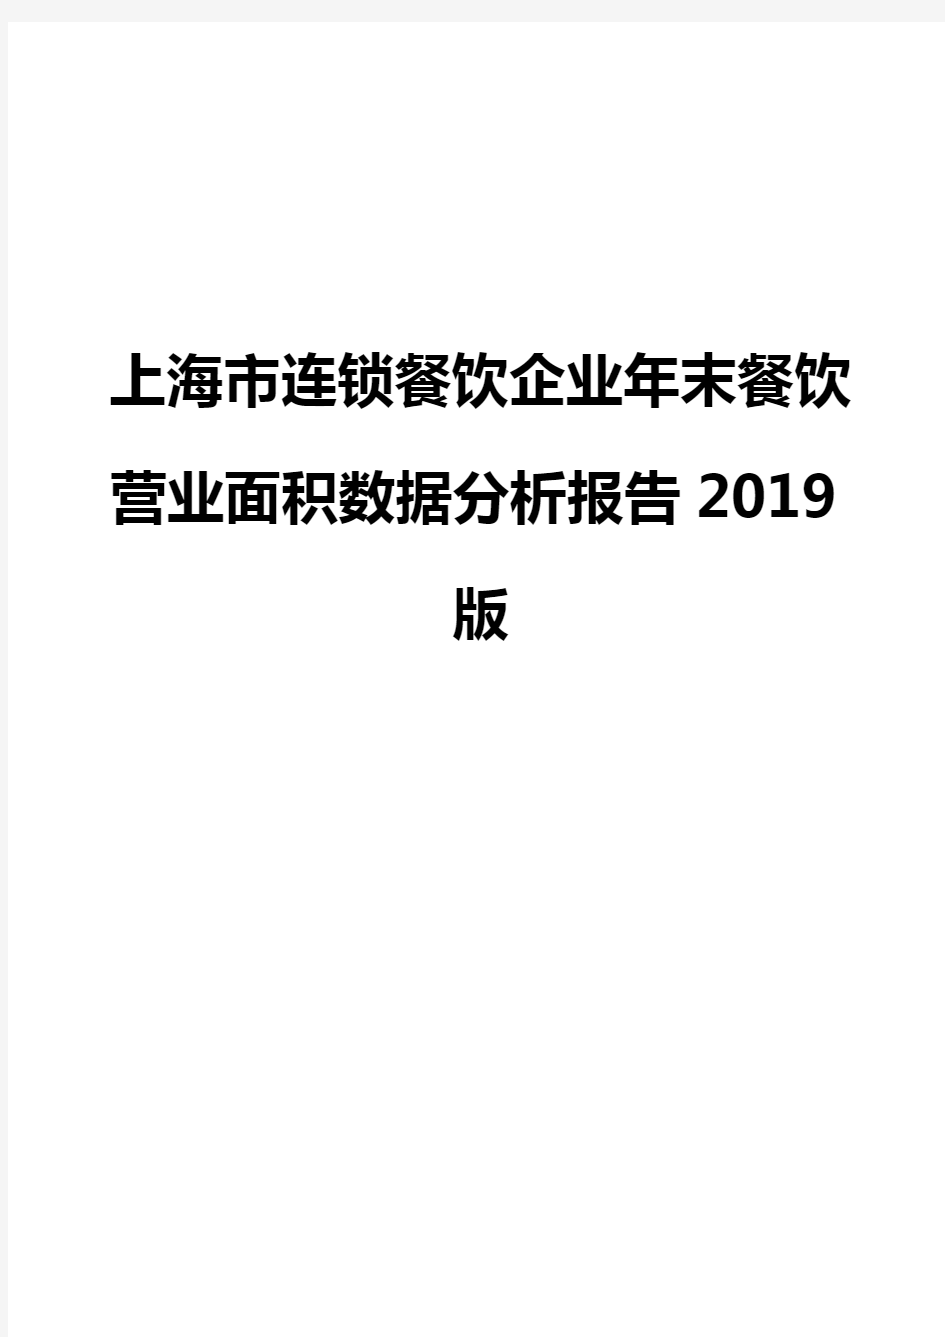 上海市连锁餐饮企业年末餐饮营业面积数据分析报告2019版